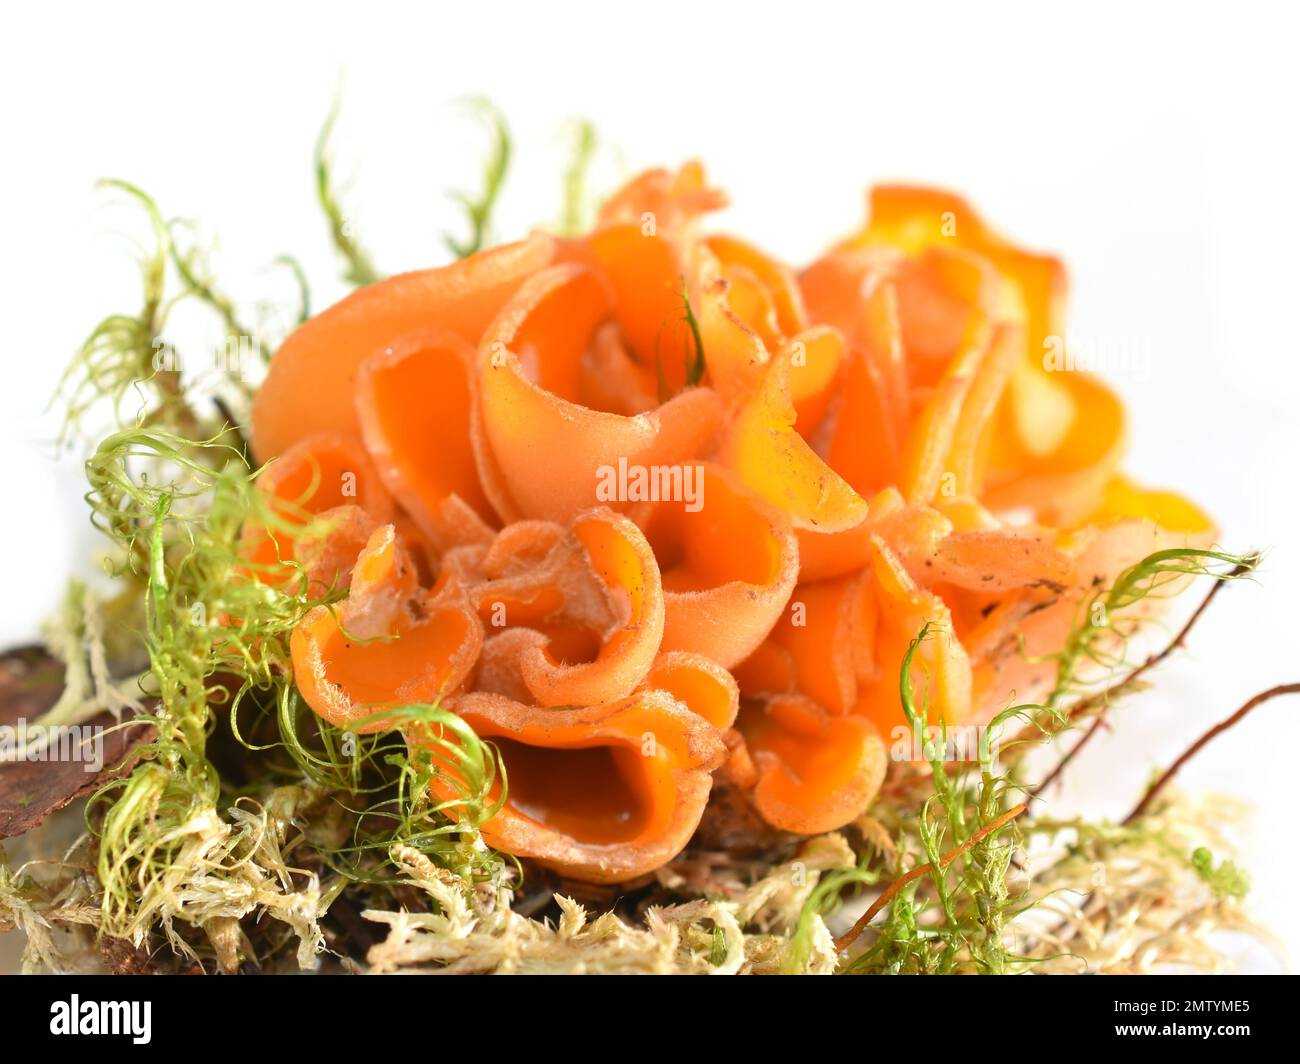 The orange peel fungus Aleuria aurantia on white background Stock Photo